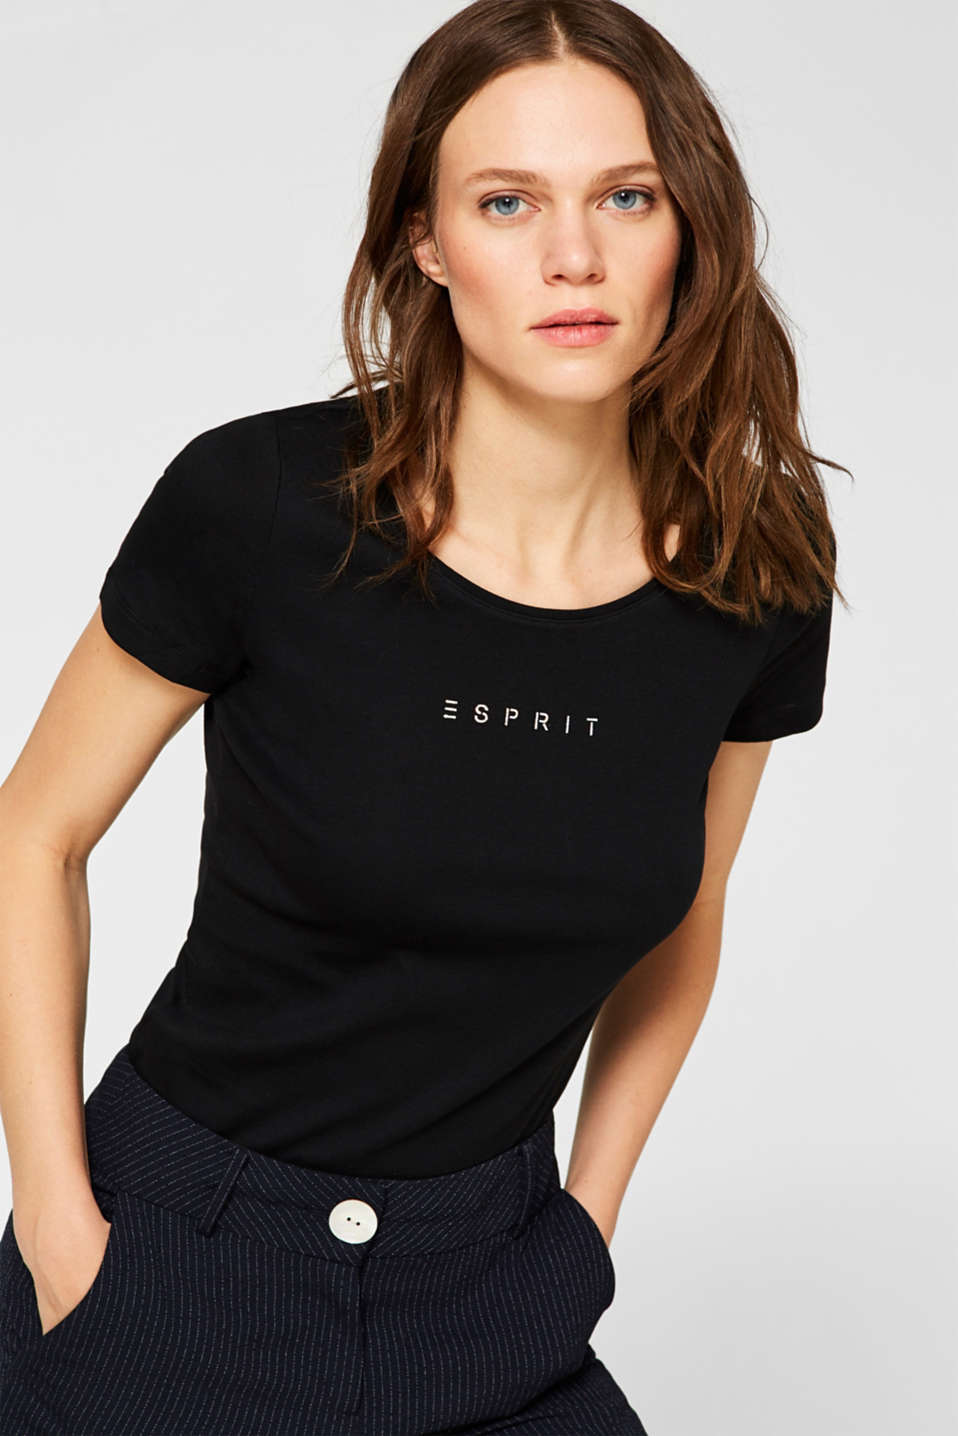 Esprit - Logo T-shirt with organic cotton, 100% cotton at our Online Shop